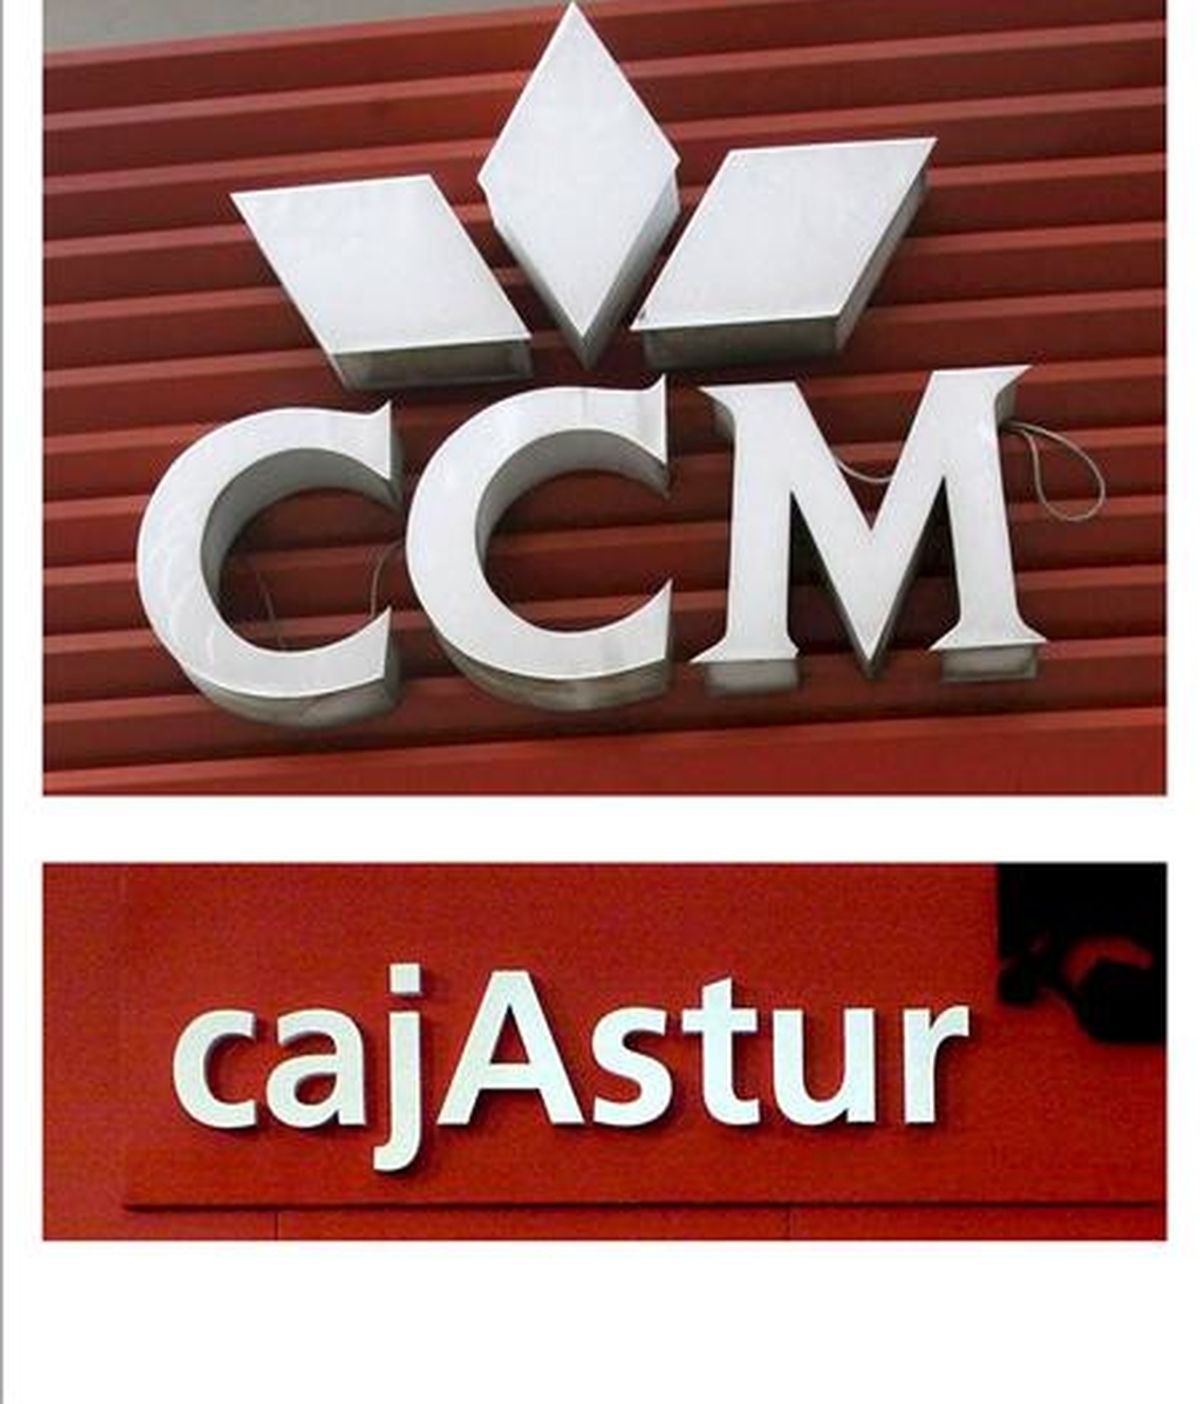 El proceso de integración del negocio bancario de Caja Castilla-La Mancha en el Grupo Cajastur se ha culminado con la firma de la escritura de segregación e integración y presentación al Registro Mercantil, ha informado la entidad. EFE/Archivo